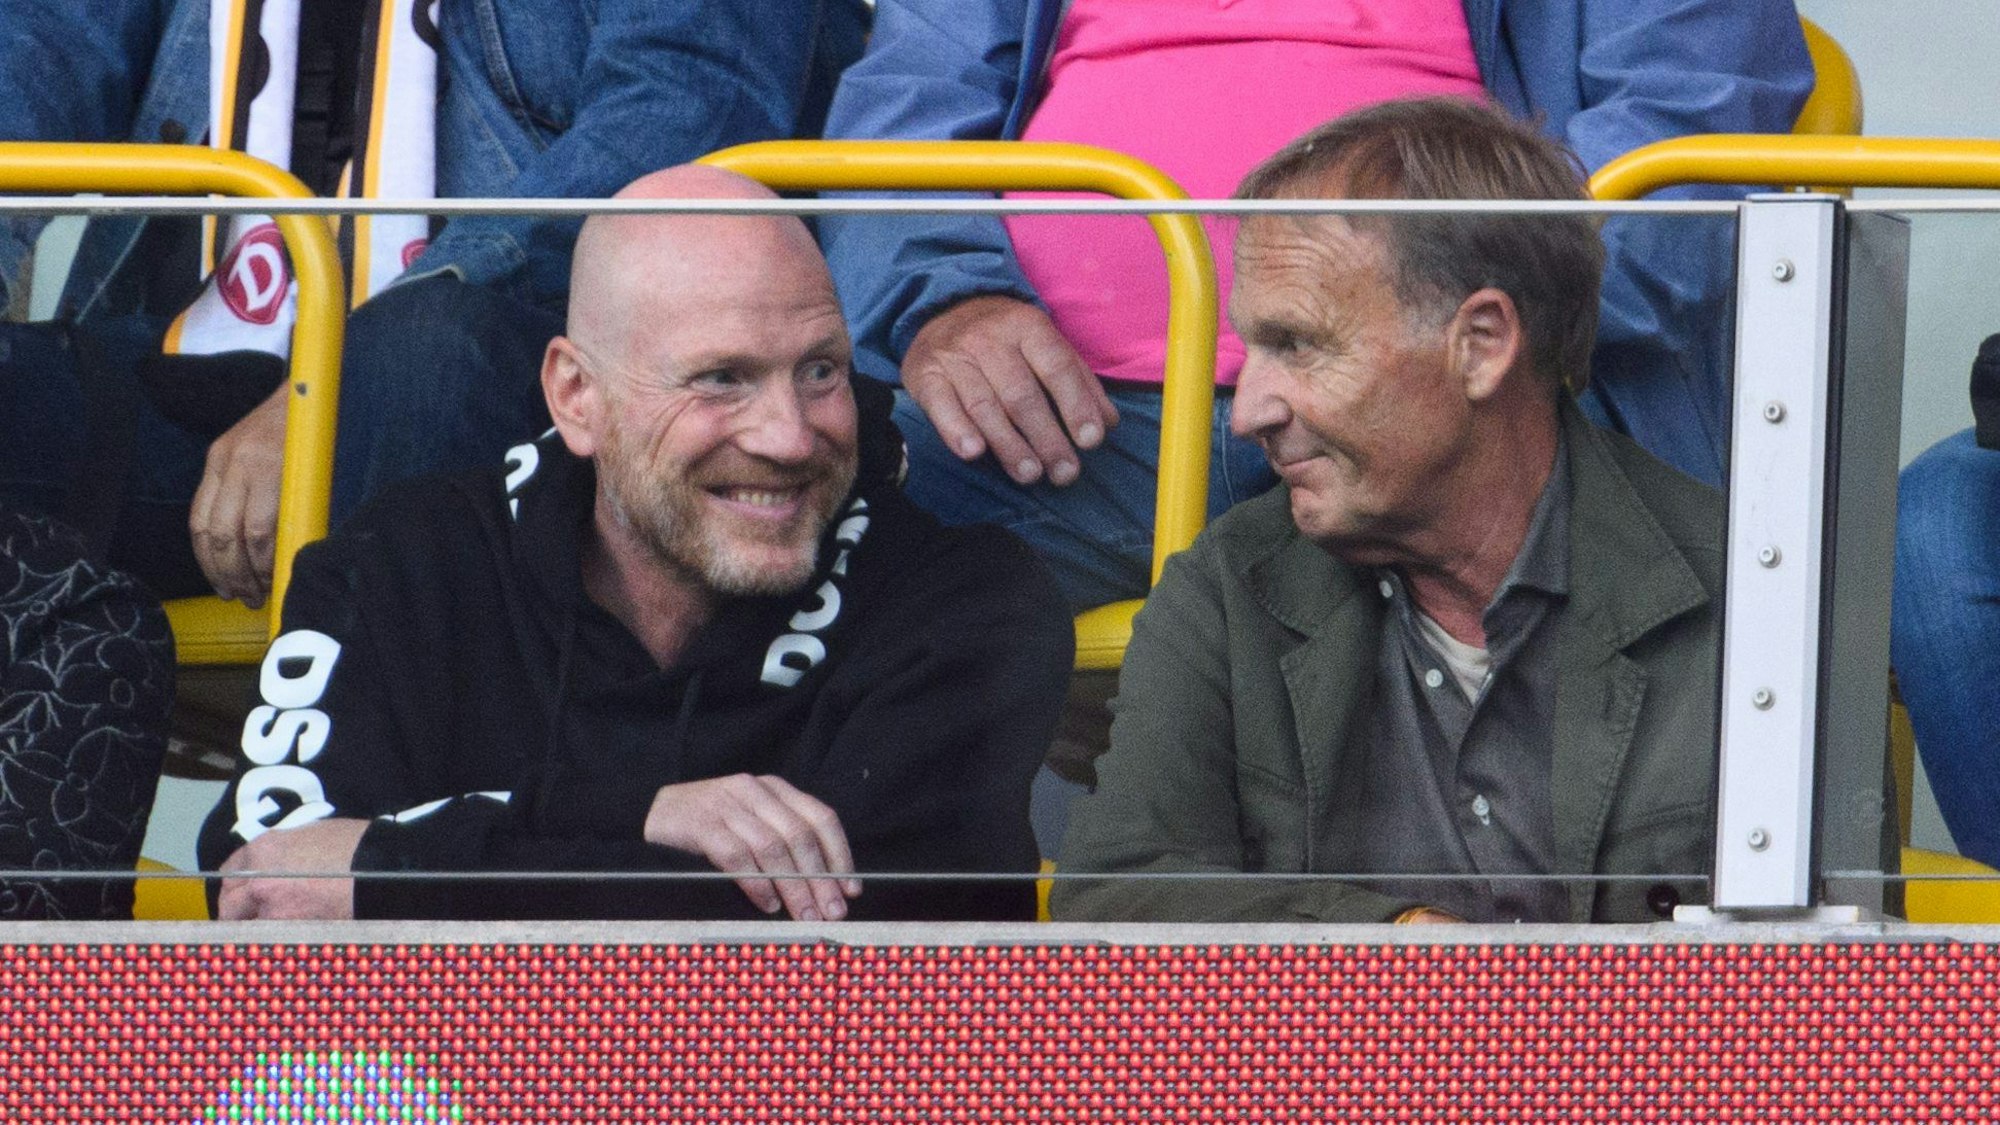 Berater Matthias Sammer (l) und Dortmunds Geschäftsführer Hans-Joachim Watzke verfolgen das Spiel von der Tribüne aus.